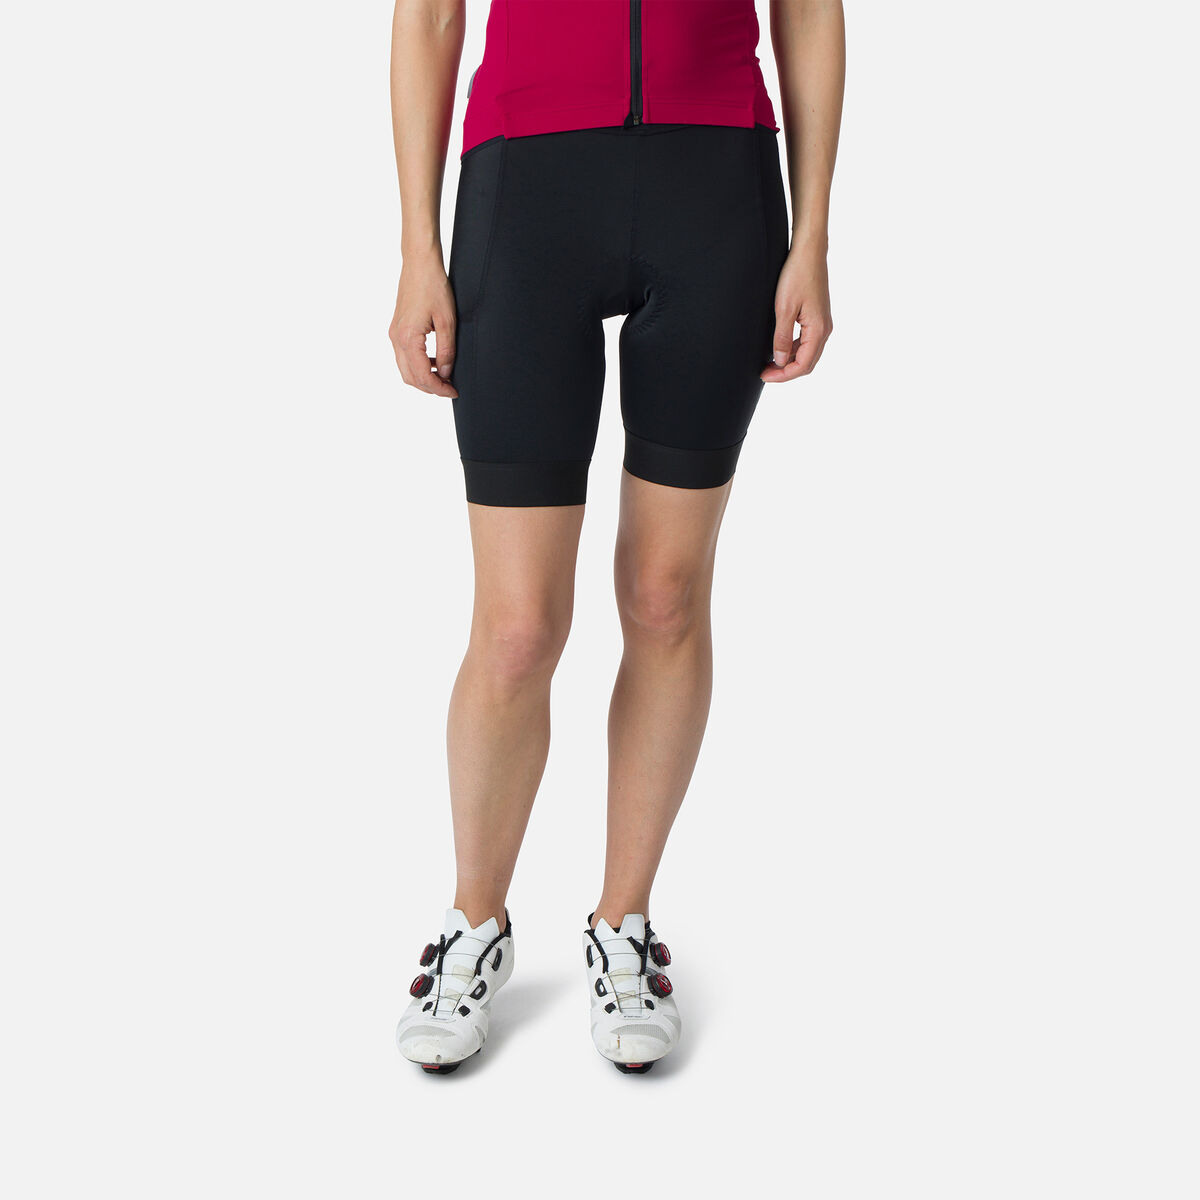 Women's Cycling Shorts